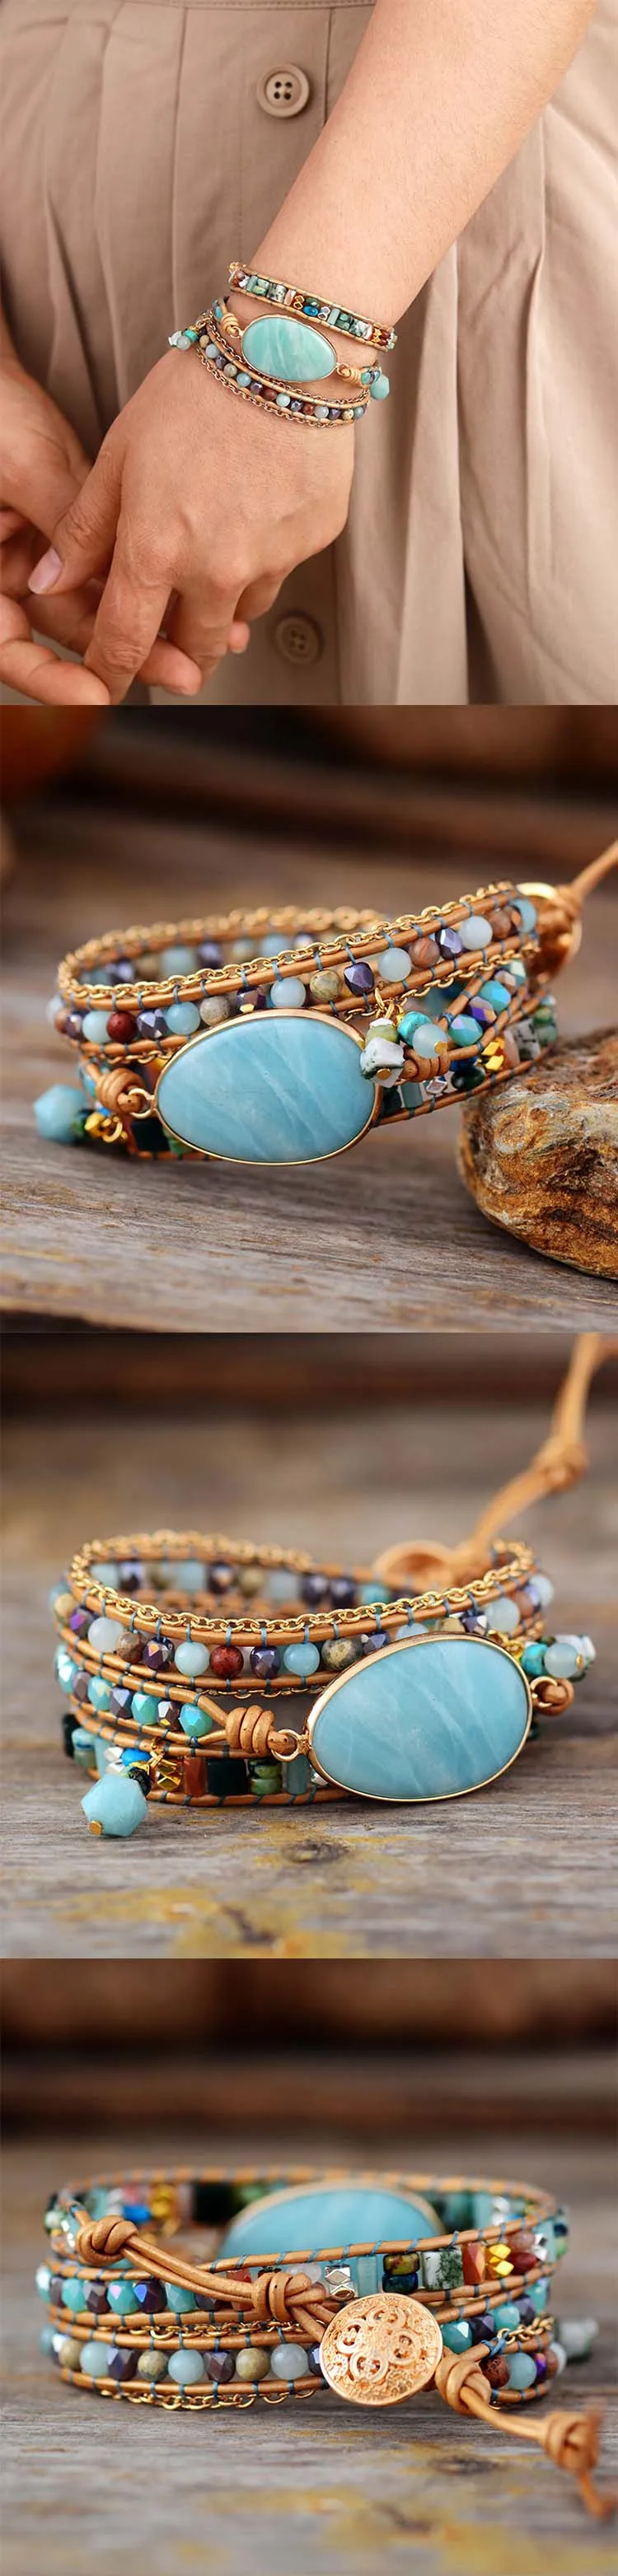 

Multilayered Leather Wrap Bracelet W/ Natural Stone Amazonite Beaded Strands Bracelet Boho Beads Jewelry Wholesale Dropship